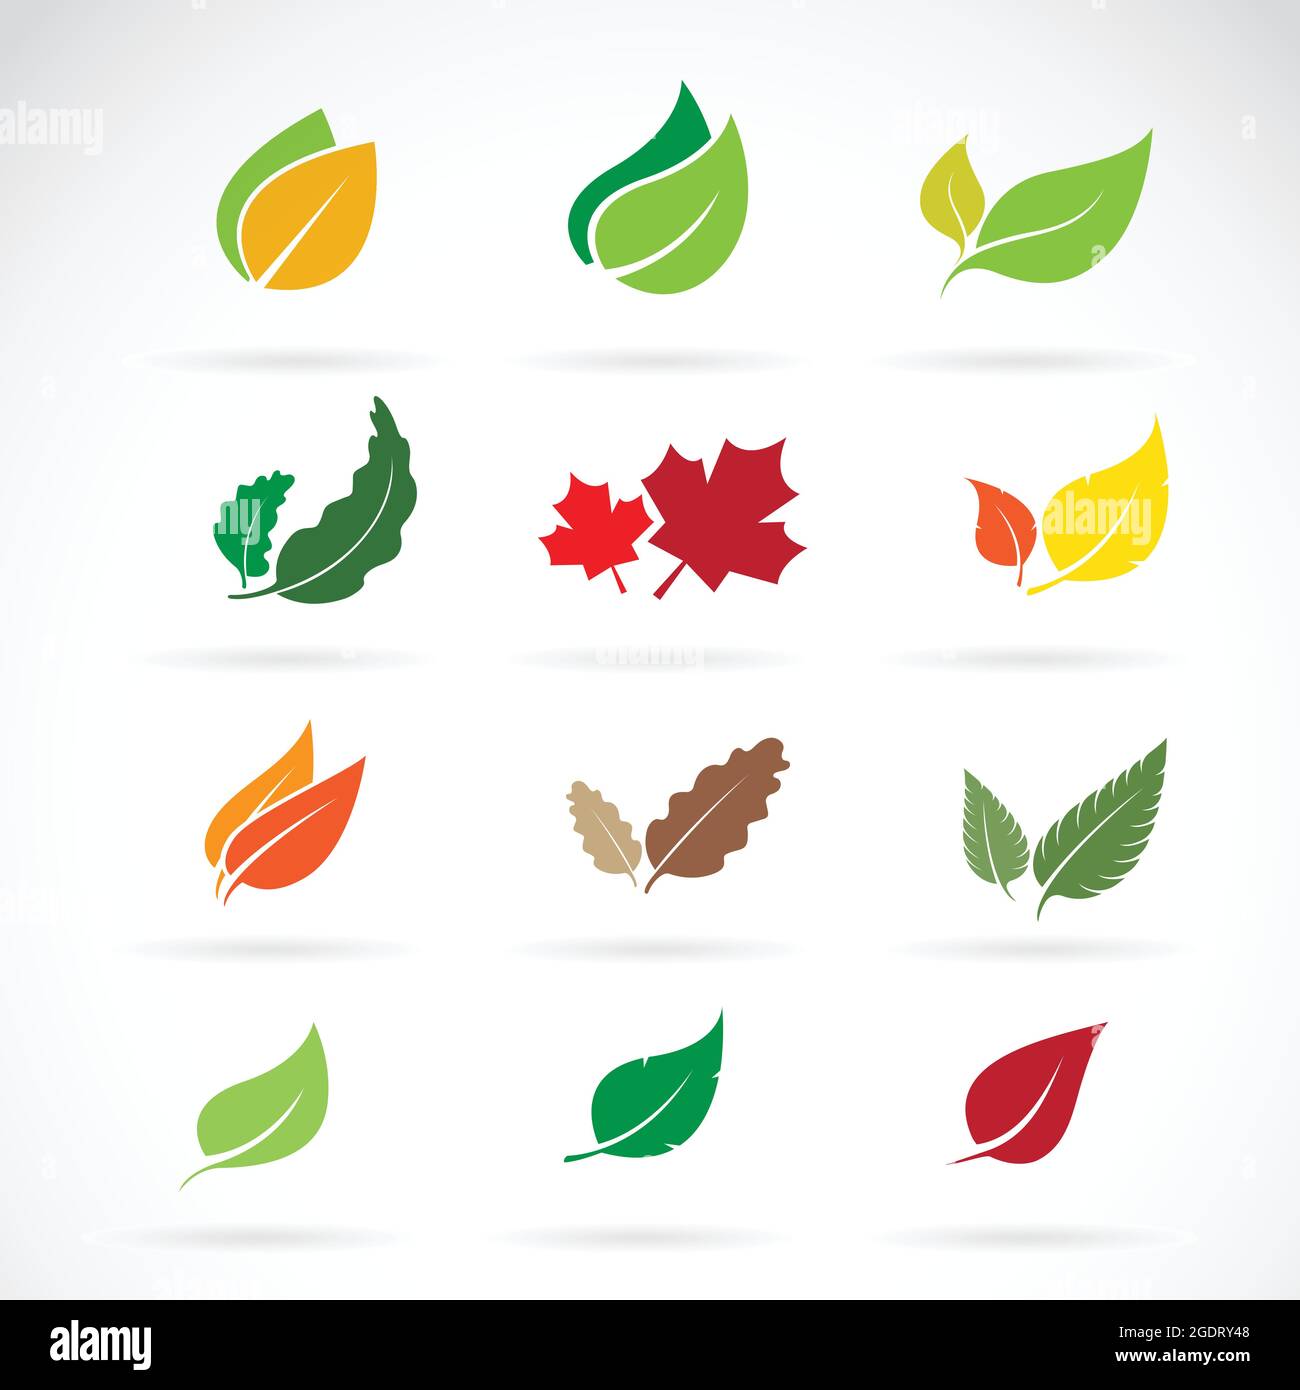 Vektor-Set von Farbe Herbst fallen Blätter auf weißem Hintergrund. Leicht editierbare Vektorgrafik mit Ebenen. Stock Vektor